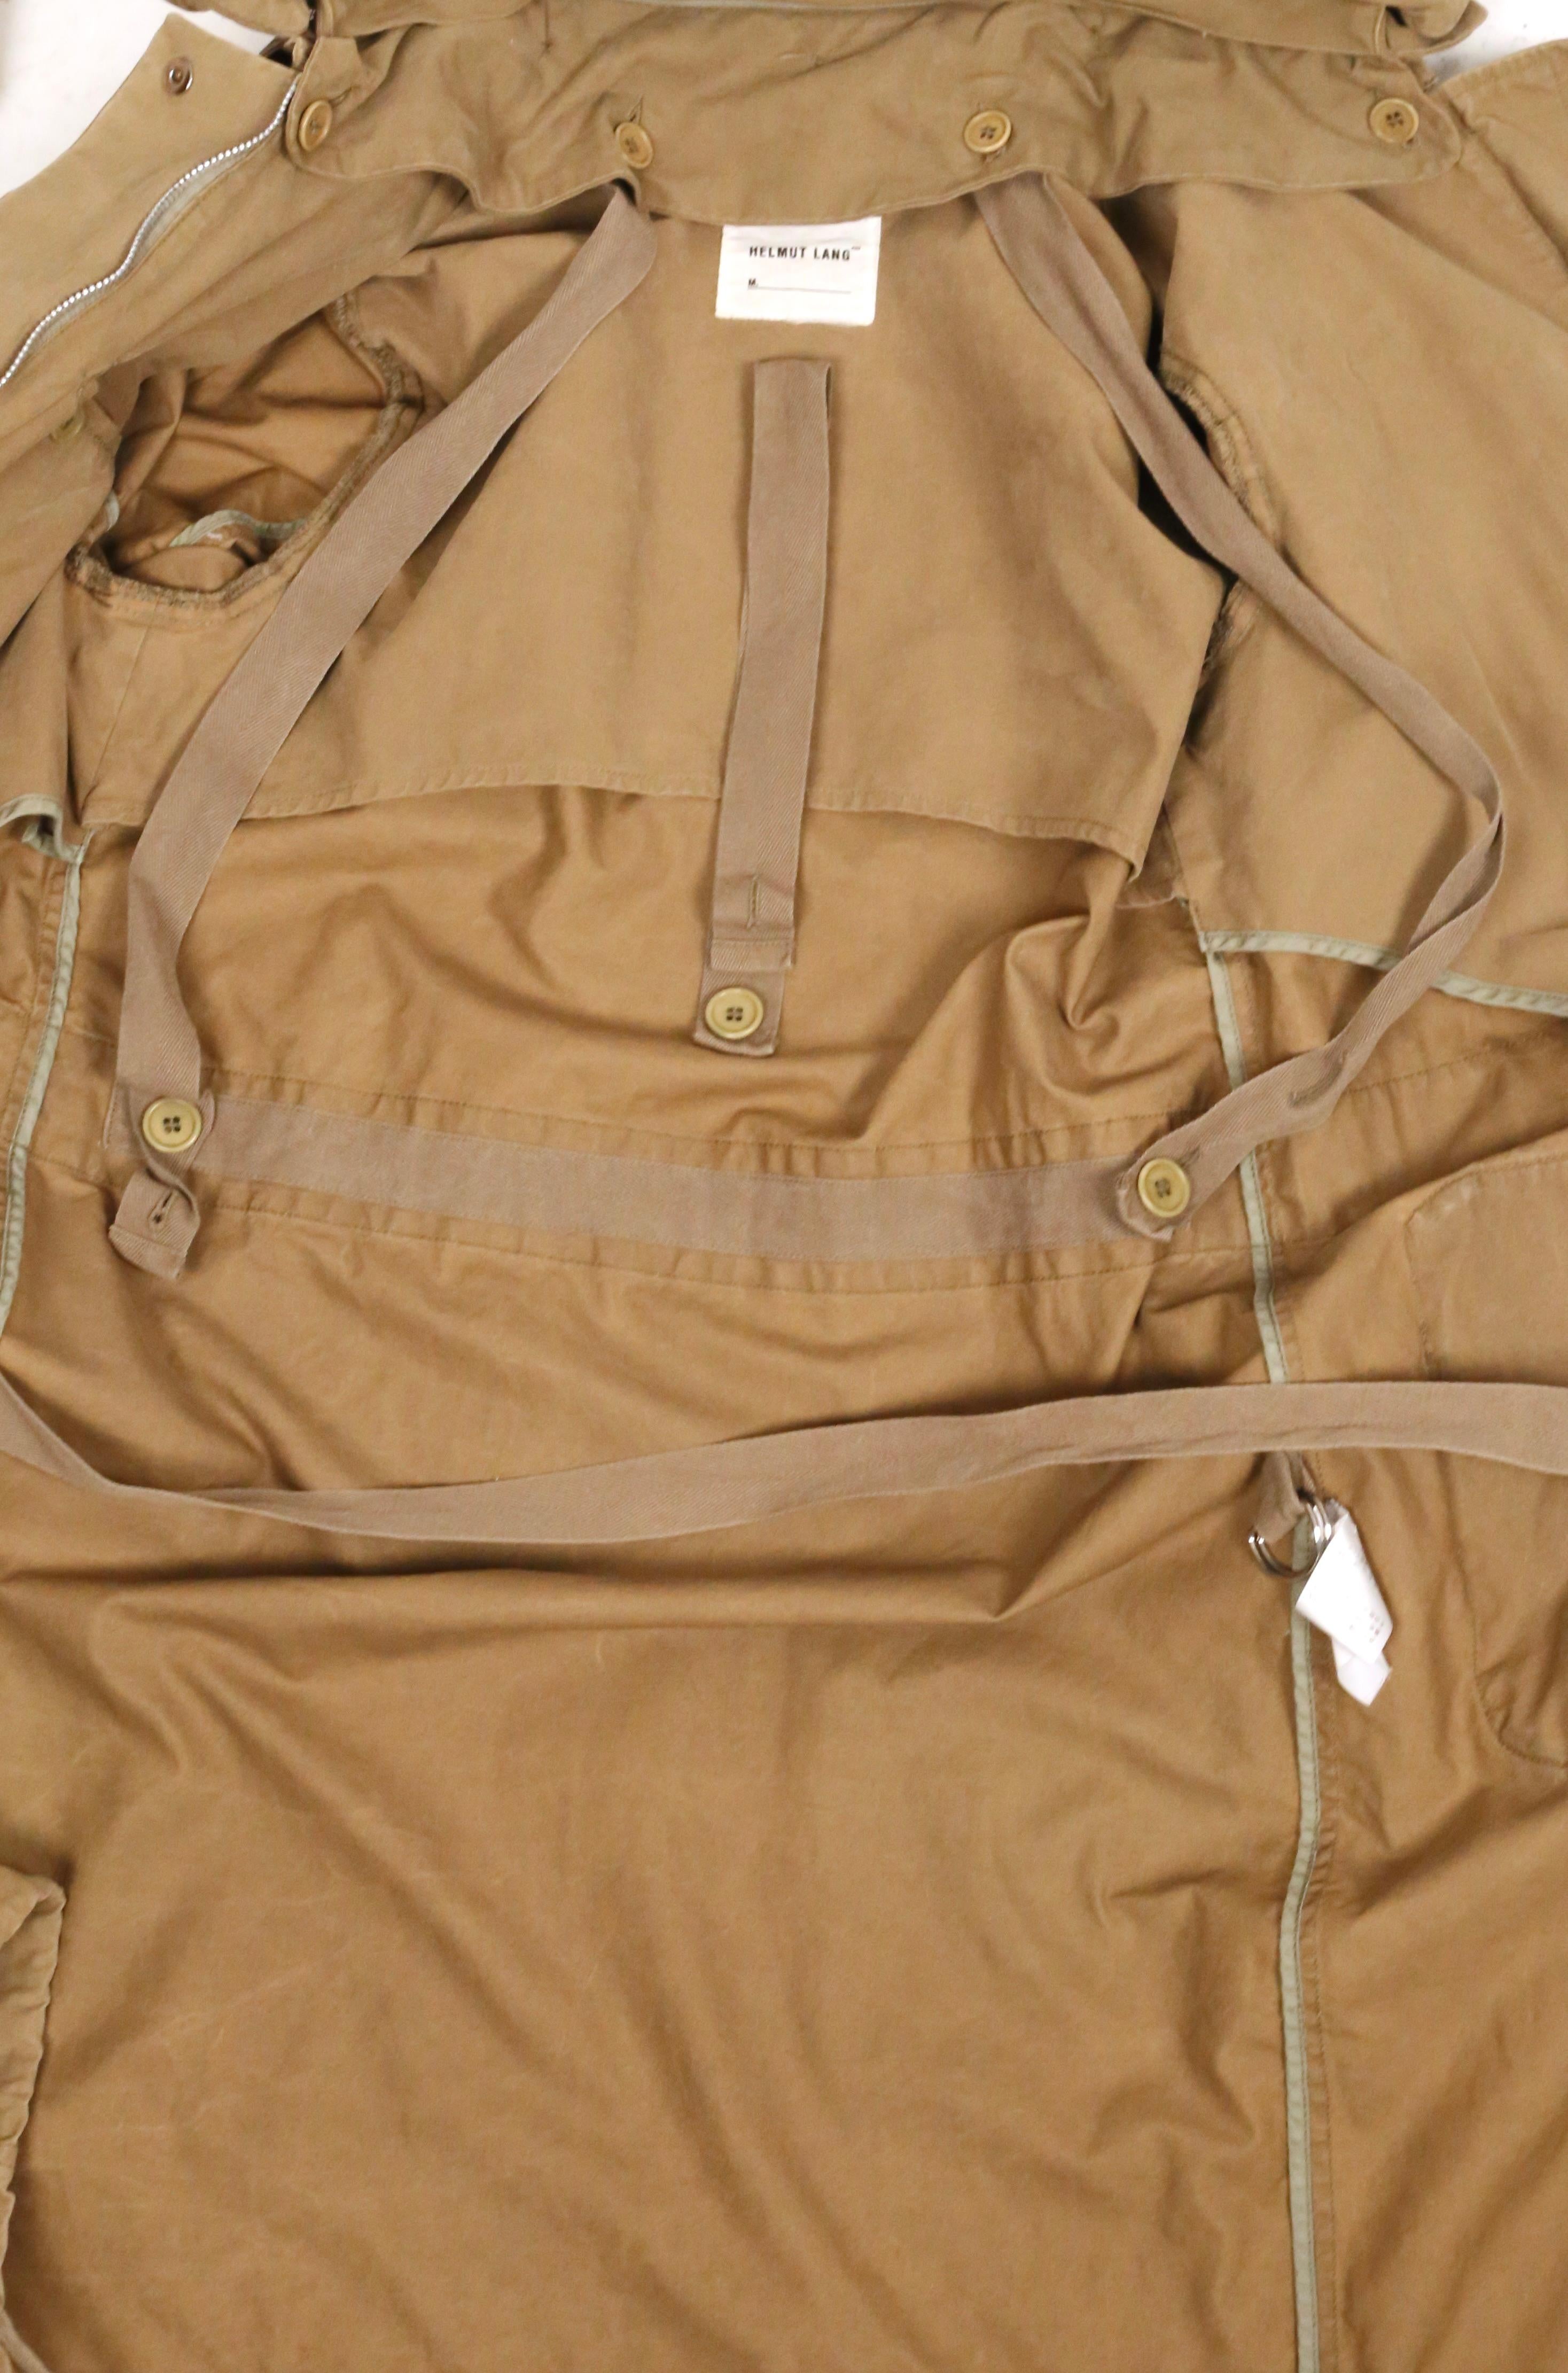 1999 HELMUT LANG vintage parka coat with padded collar & bondage straps  11